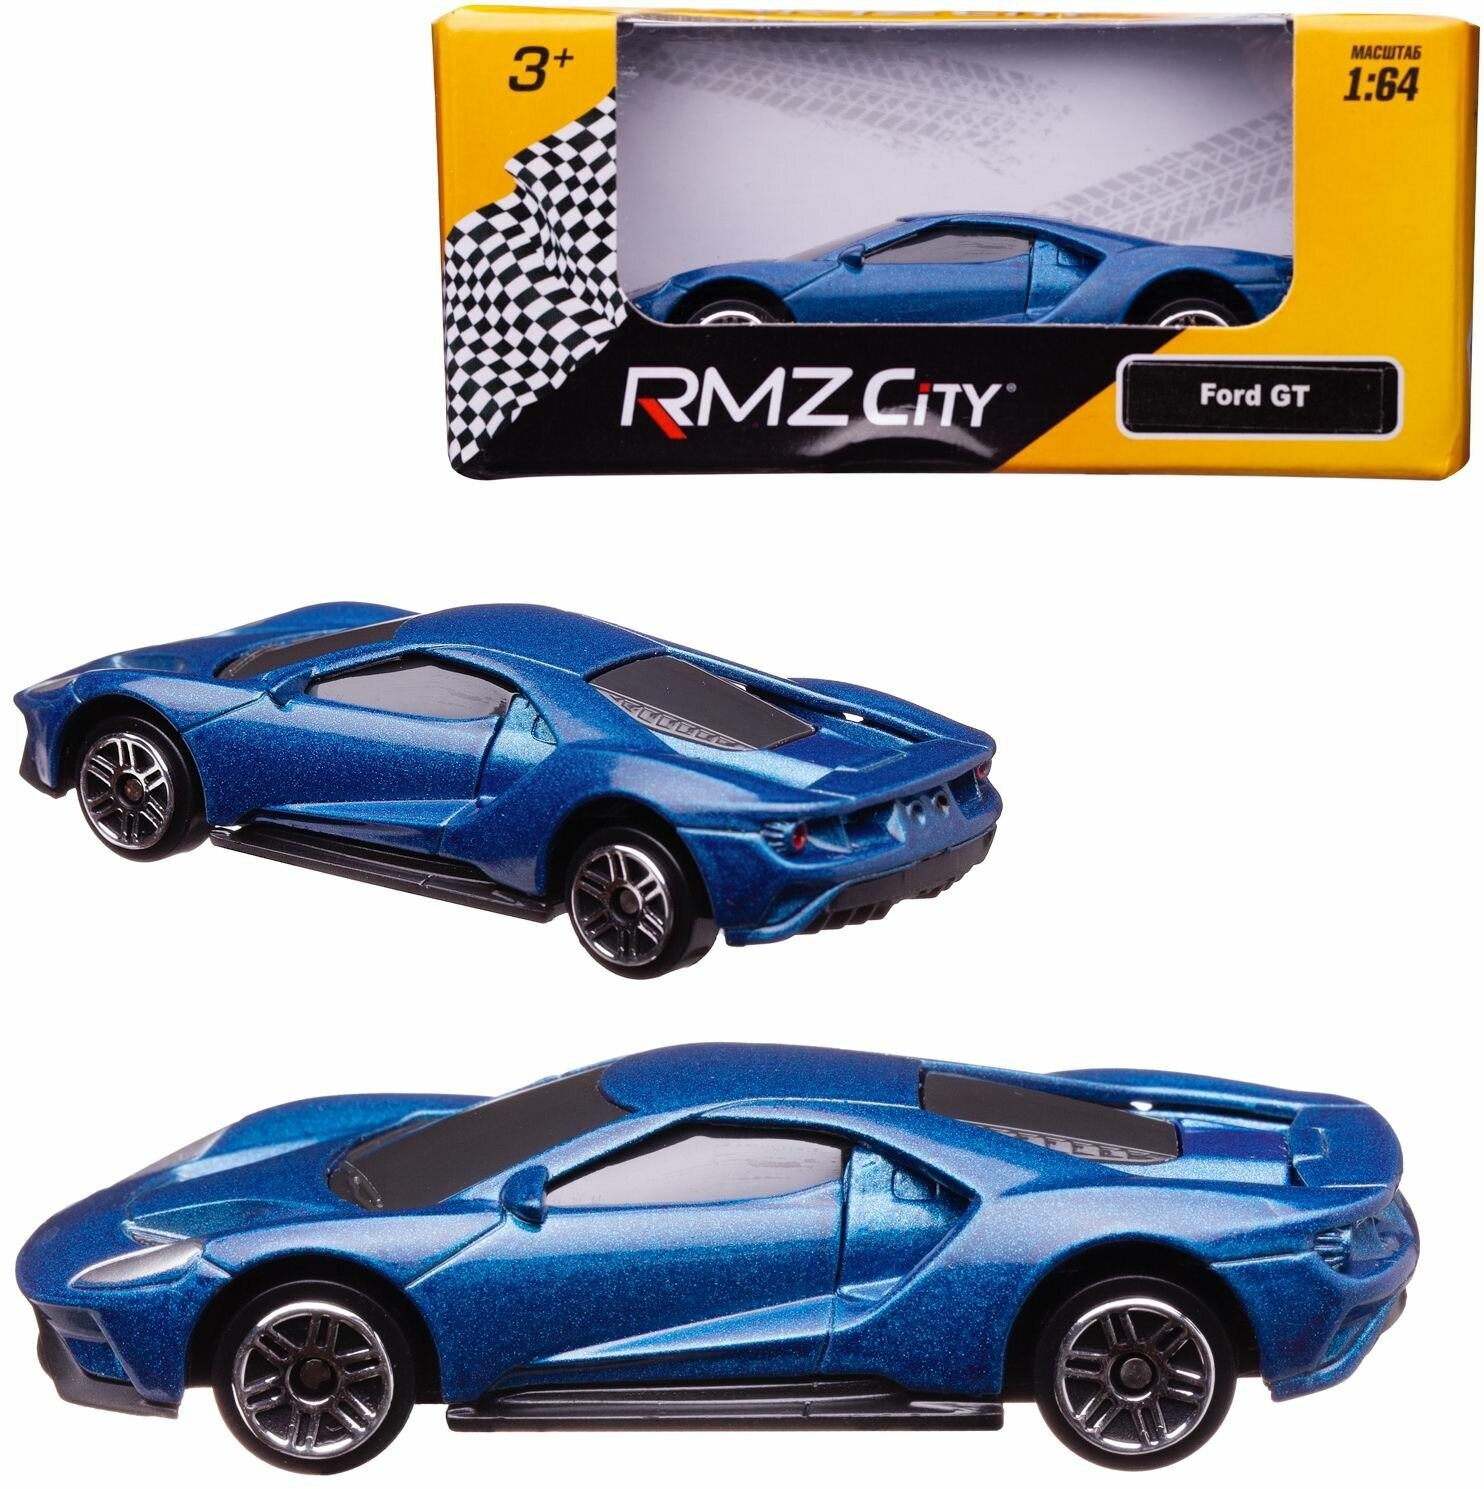 Машина металлическая Uni-Fortune "RMZ City" масштаб 1:64, Ford GT 2019, без механизмов, цвет синий (344050S-BLU)